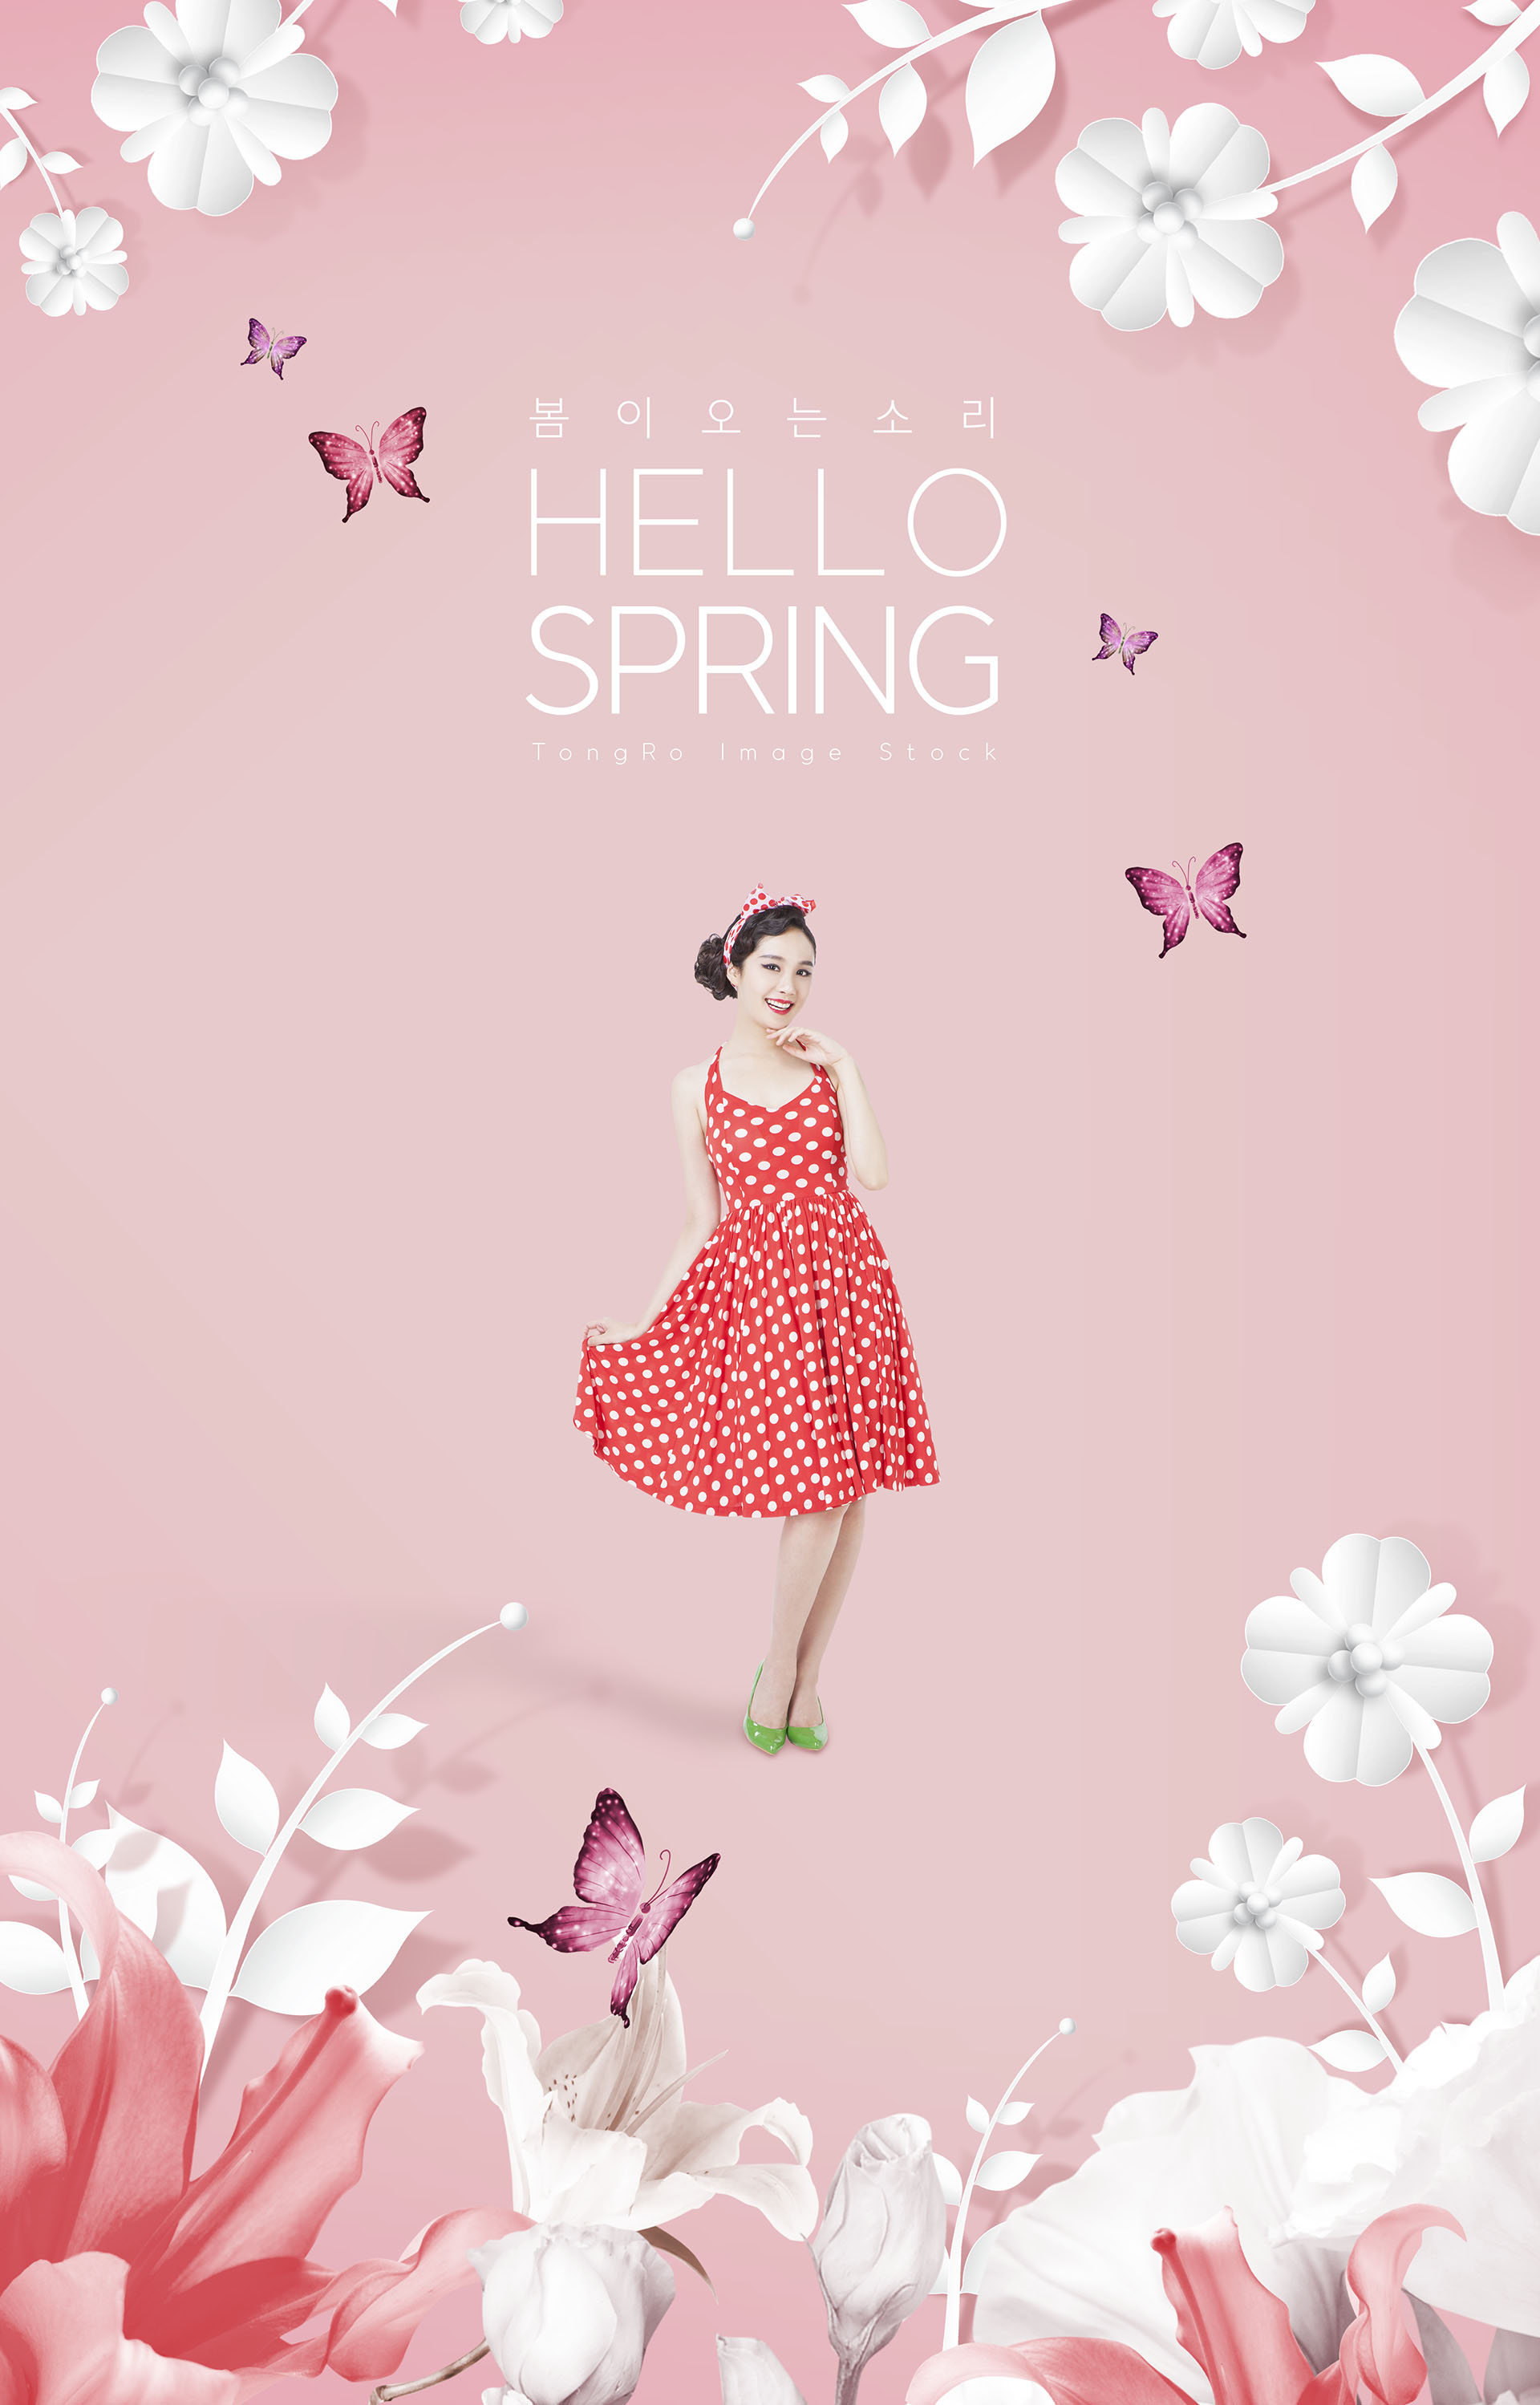 适合春季春天38节宣传的海报模板下载[PSD]插图(13)